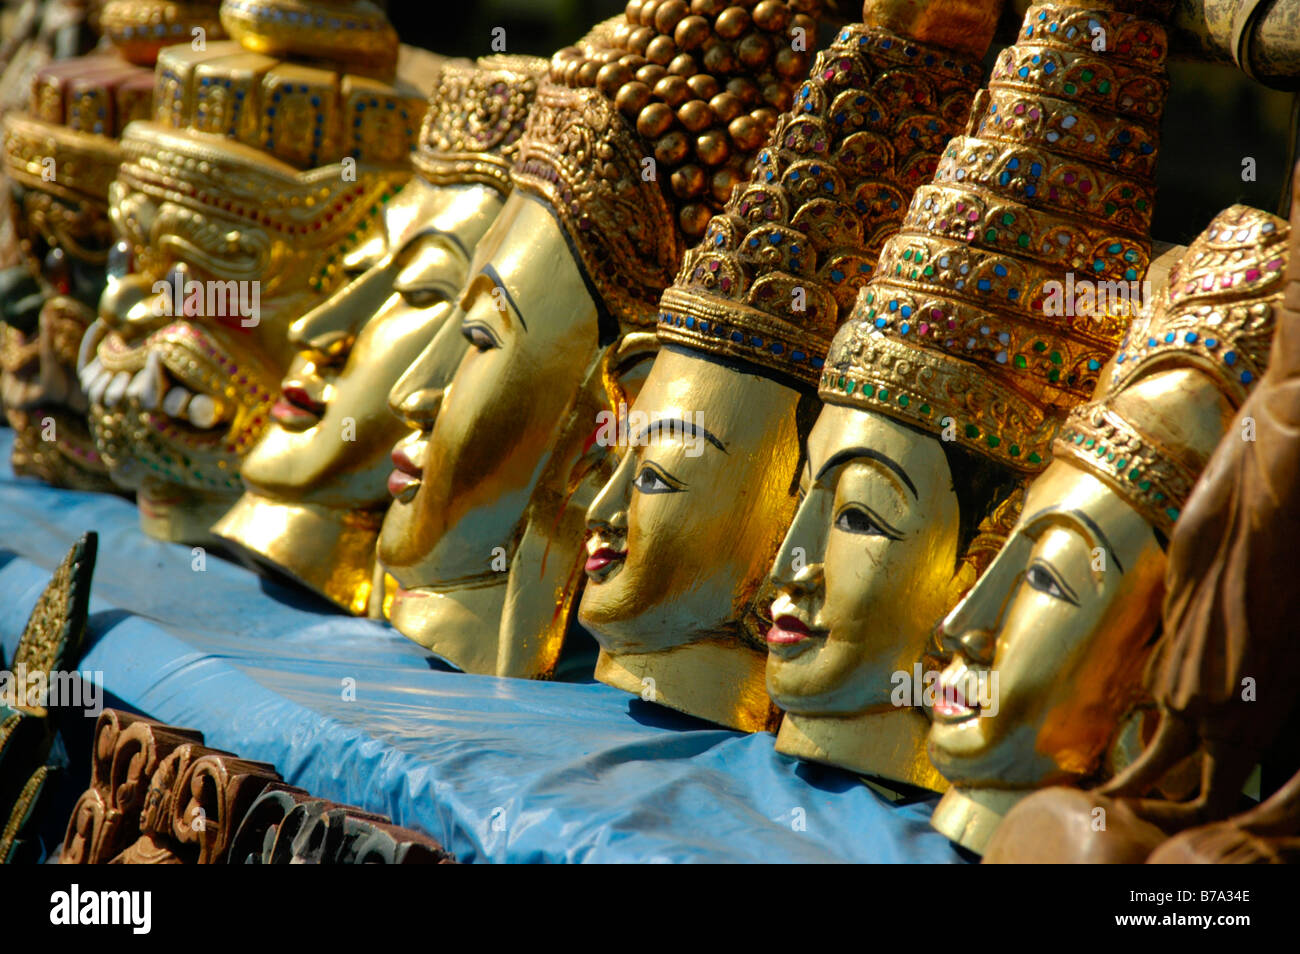 Souvenirs, rangée d'or masques peints sculptés dans du bois, Indein, lac Inle, l'État de Shan, Birmanie, Myanmar, en Asie du sud-est Banque D'Images